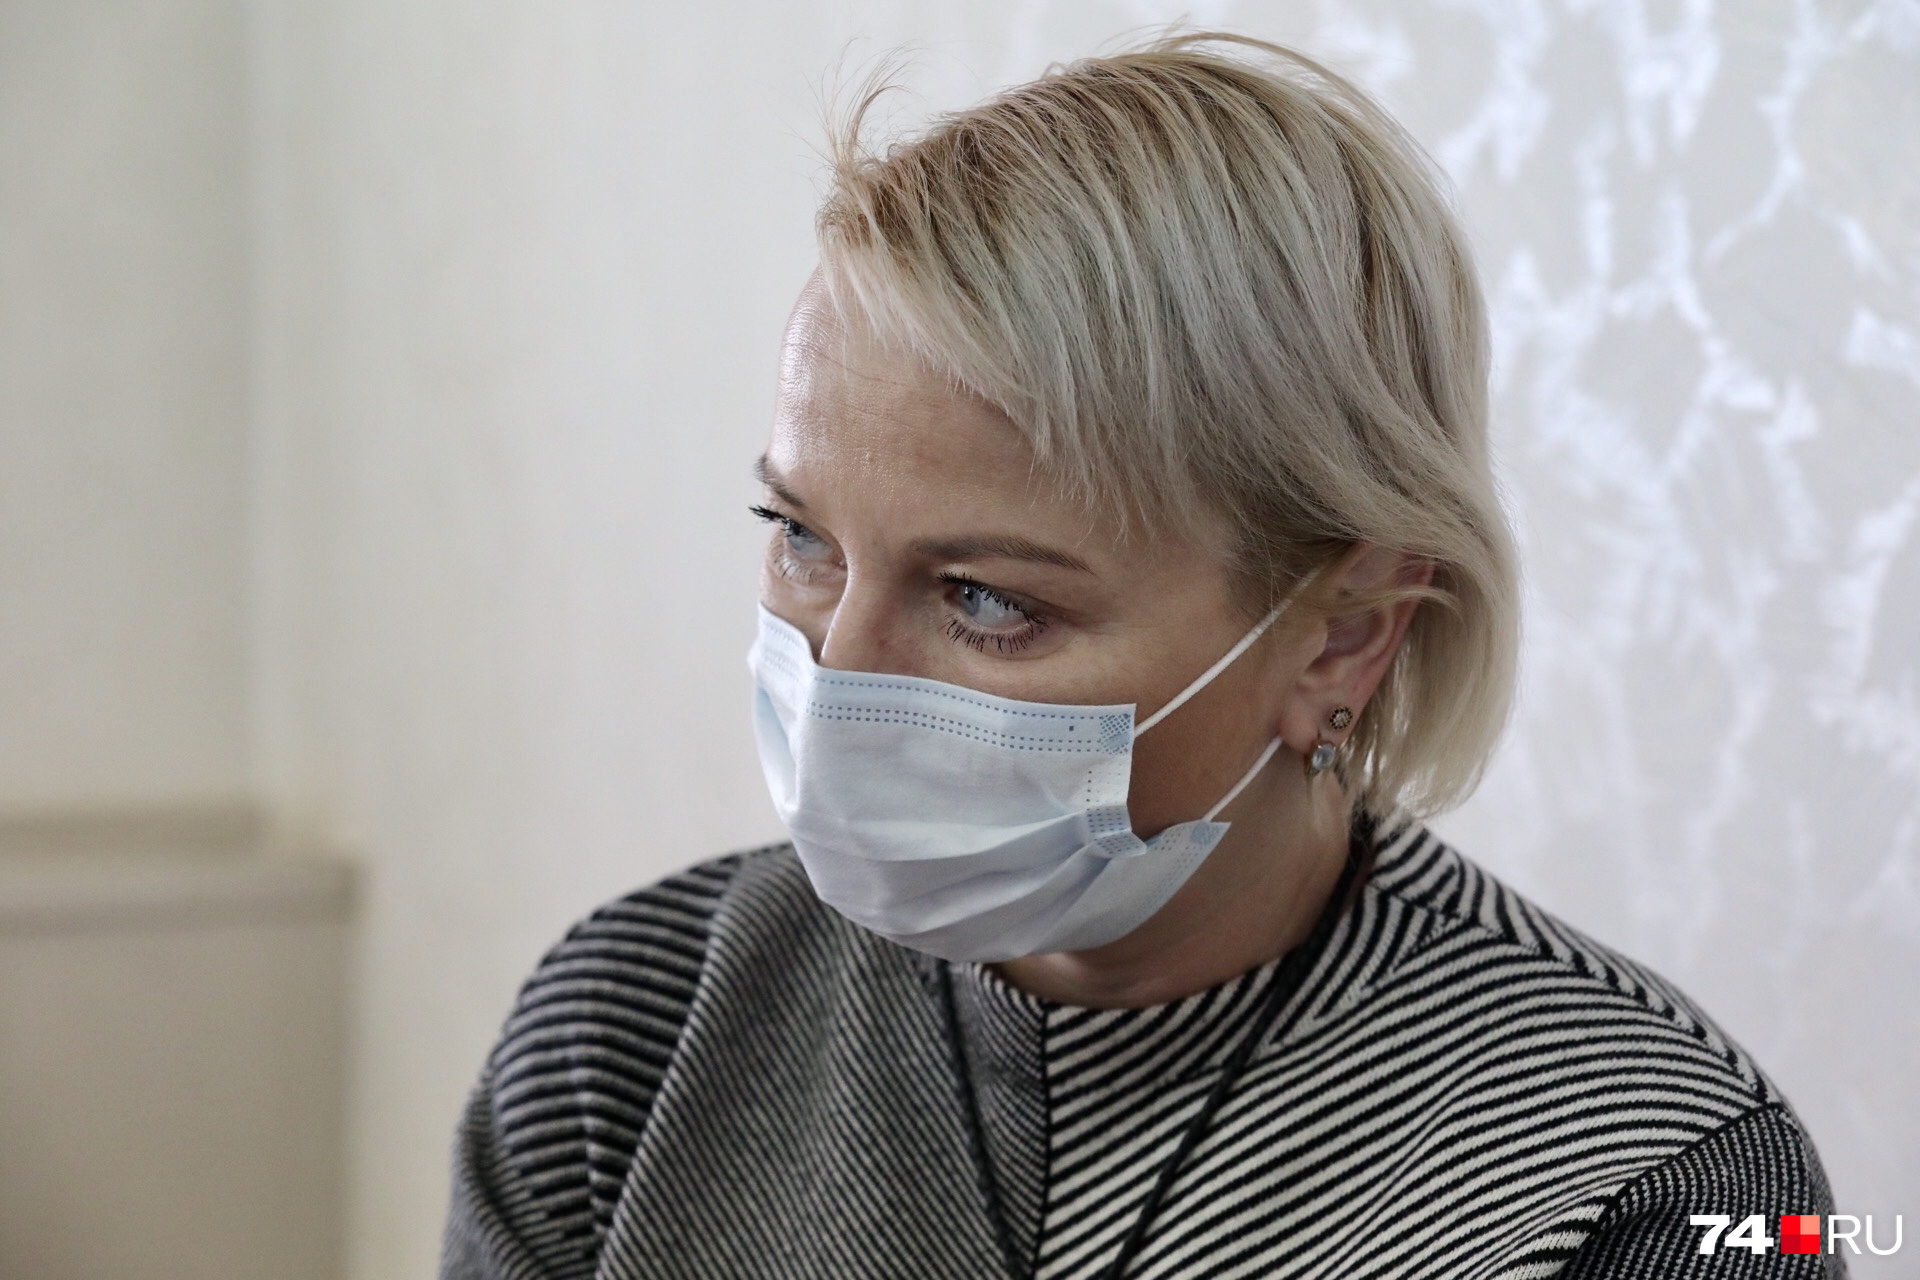 После выписки из челябинской больницы девушка проходила реабилитацию в частных клиниках, напомнила Наталья Гилёва